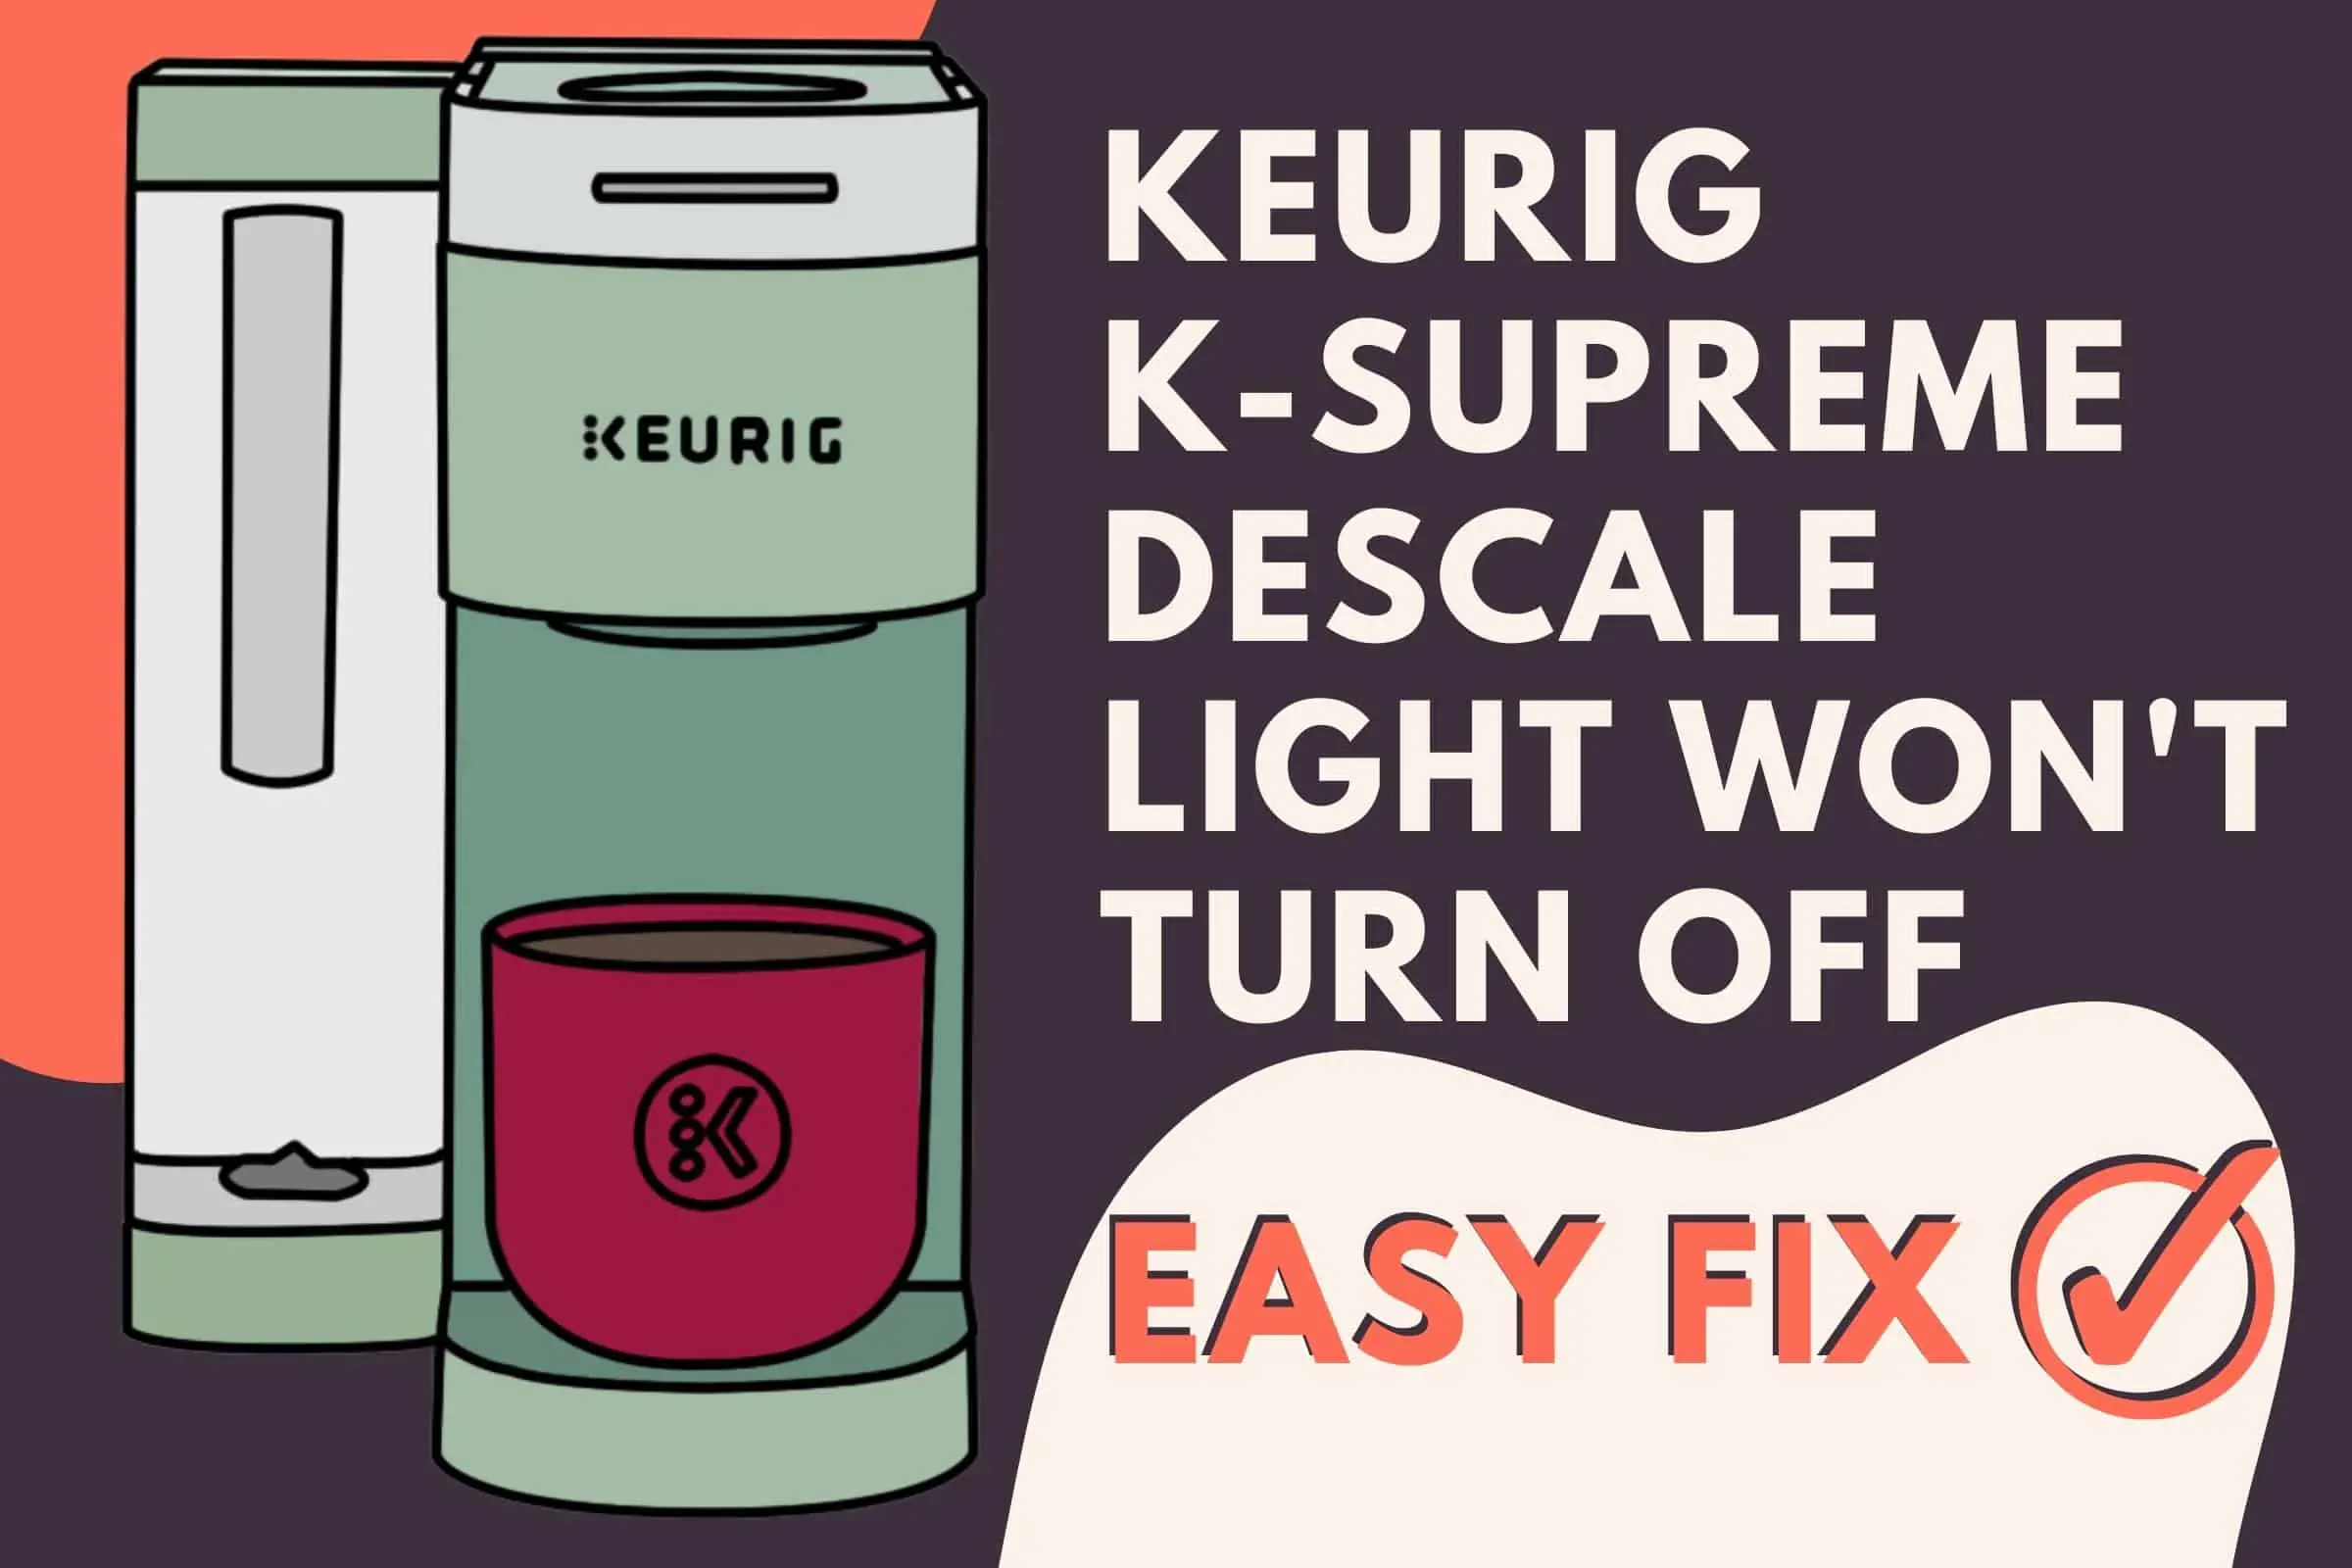 Reset Descale Light on Keurig K-Supreme